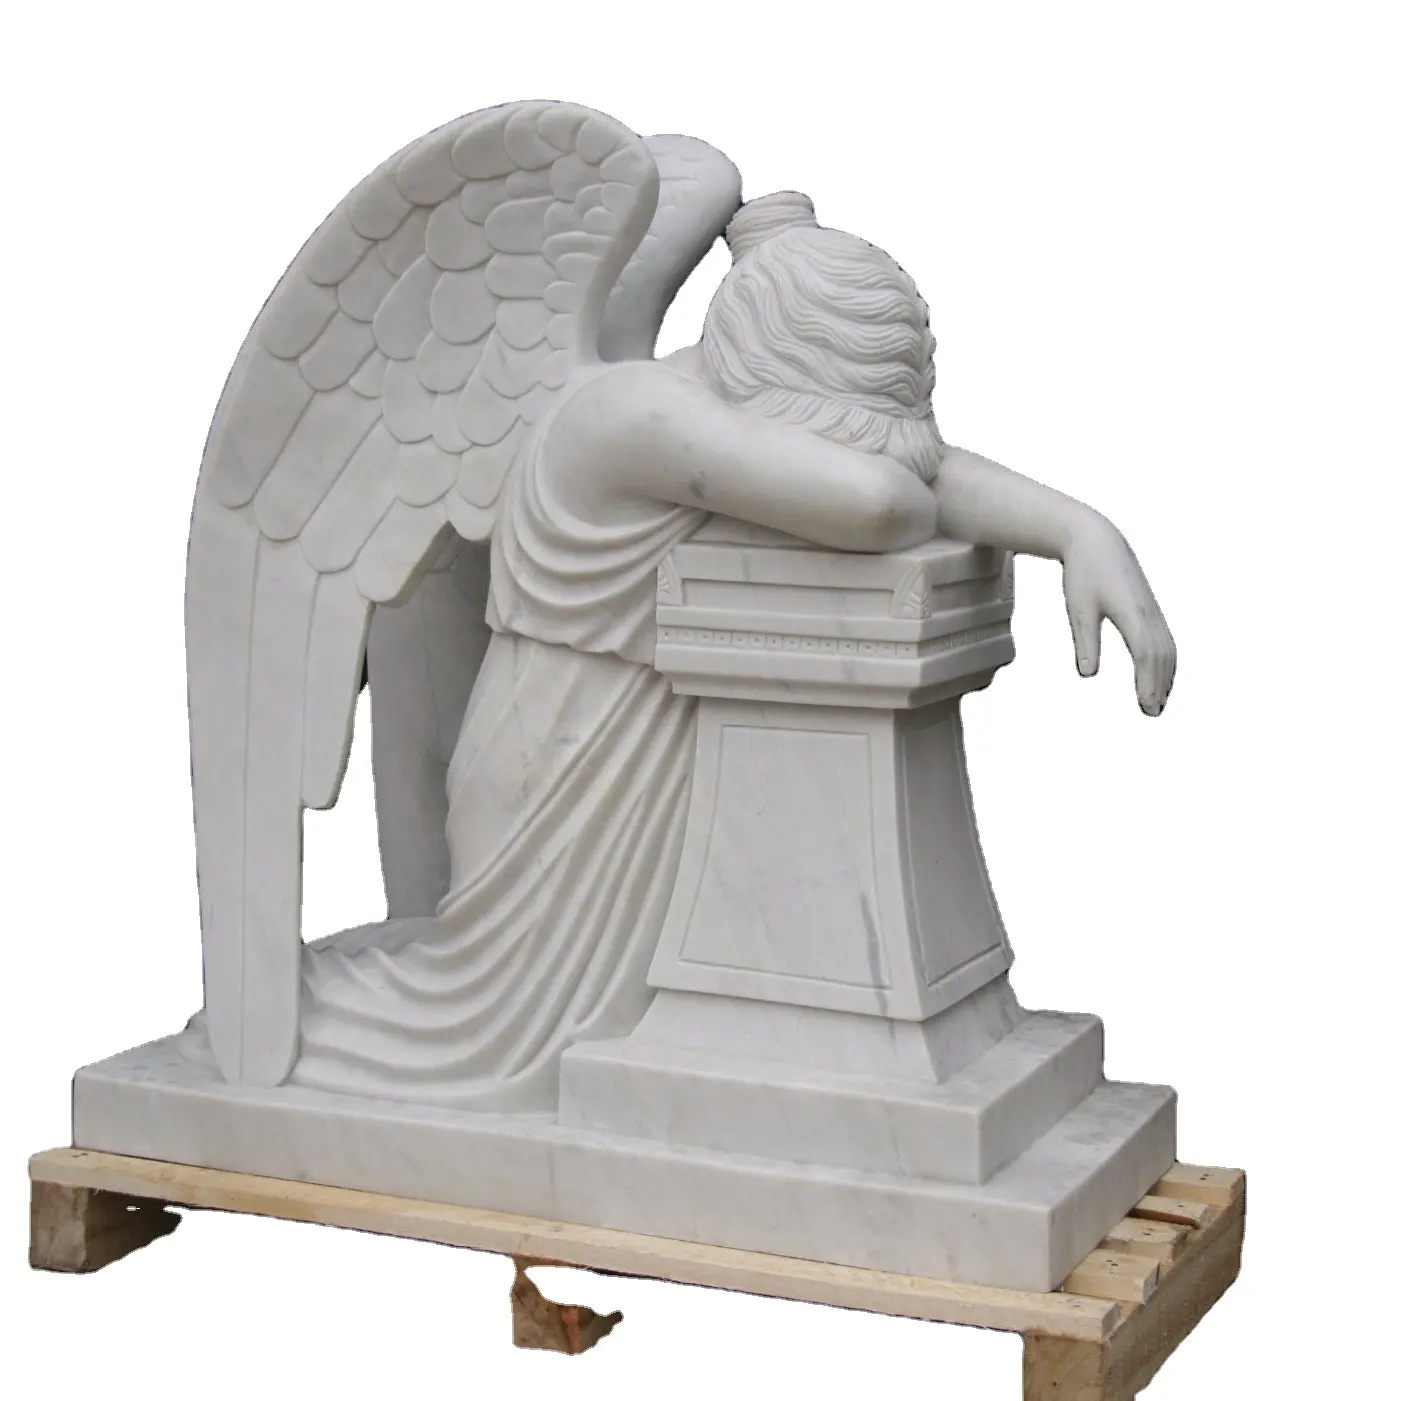 Handmade mármore branco granito sentado ângulo escultura estátuas